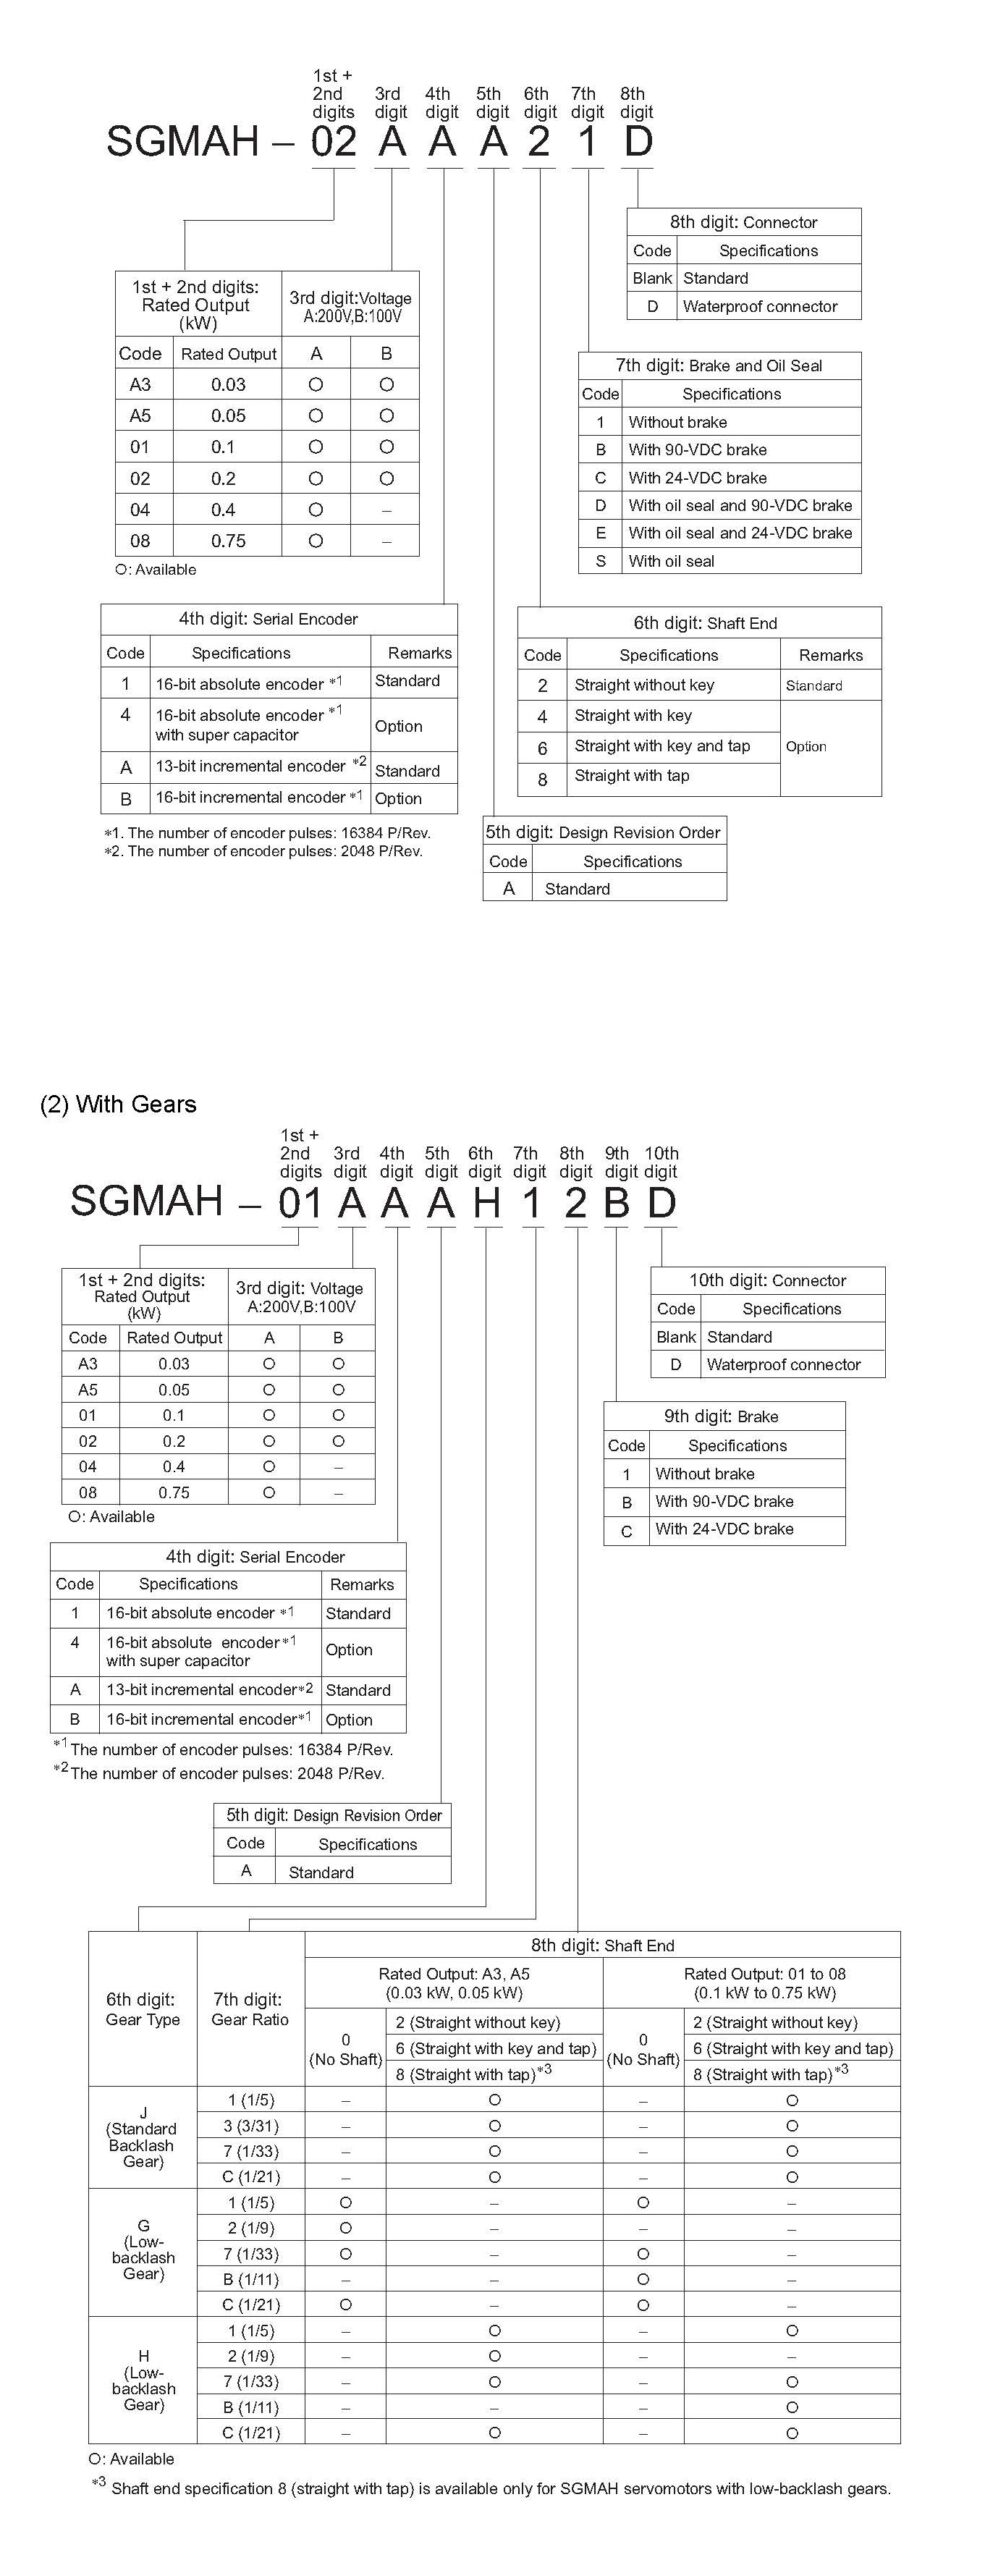 SGMAH-02AAA41 spec